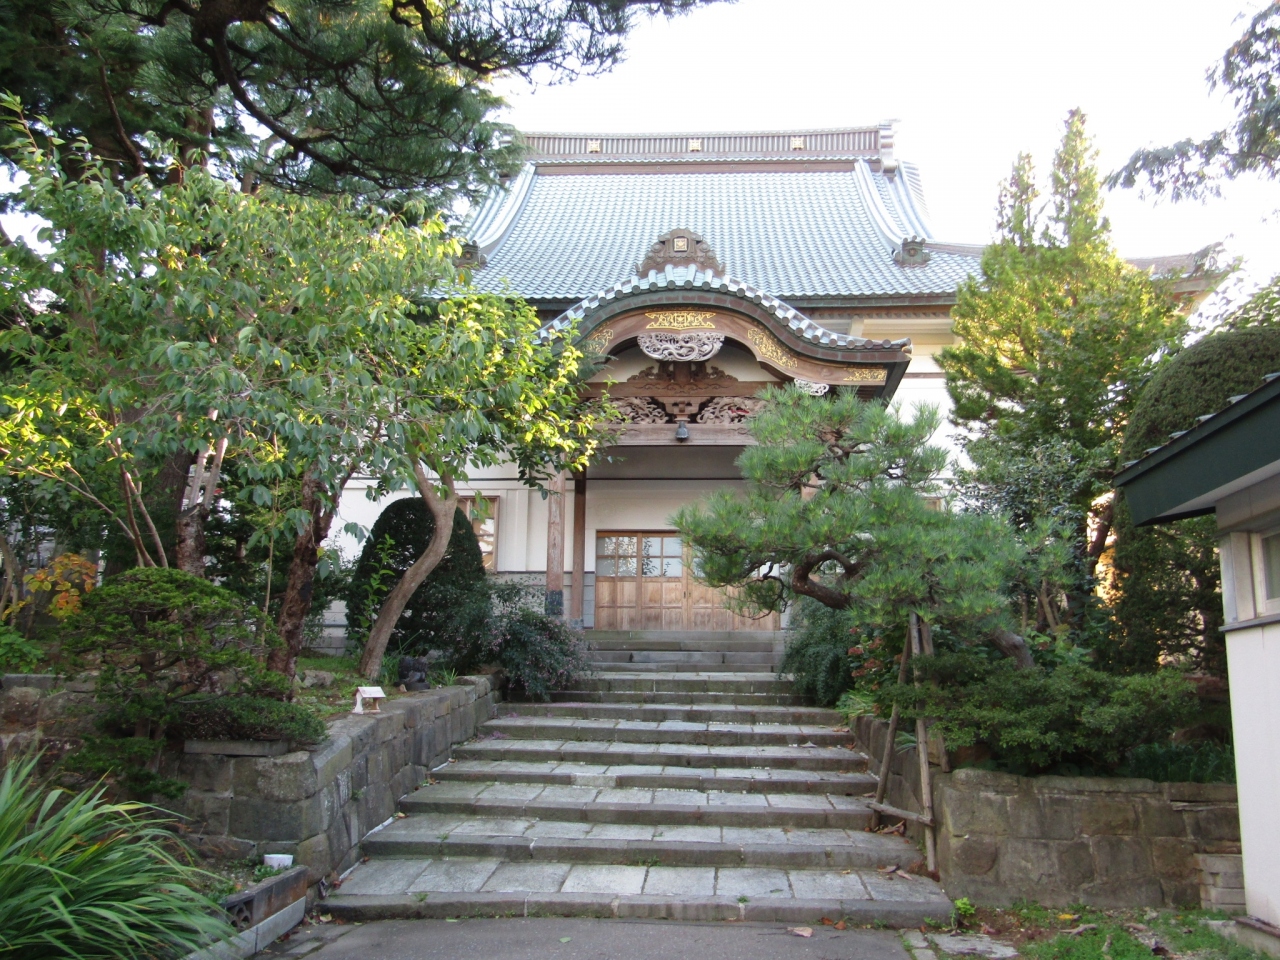 函館観光のモデルコースのおすすめ20選　8位:神社仏閣を訪ねて函館山麓散歩コース